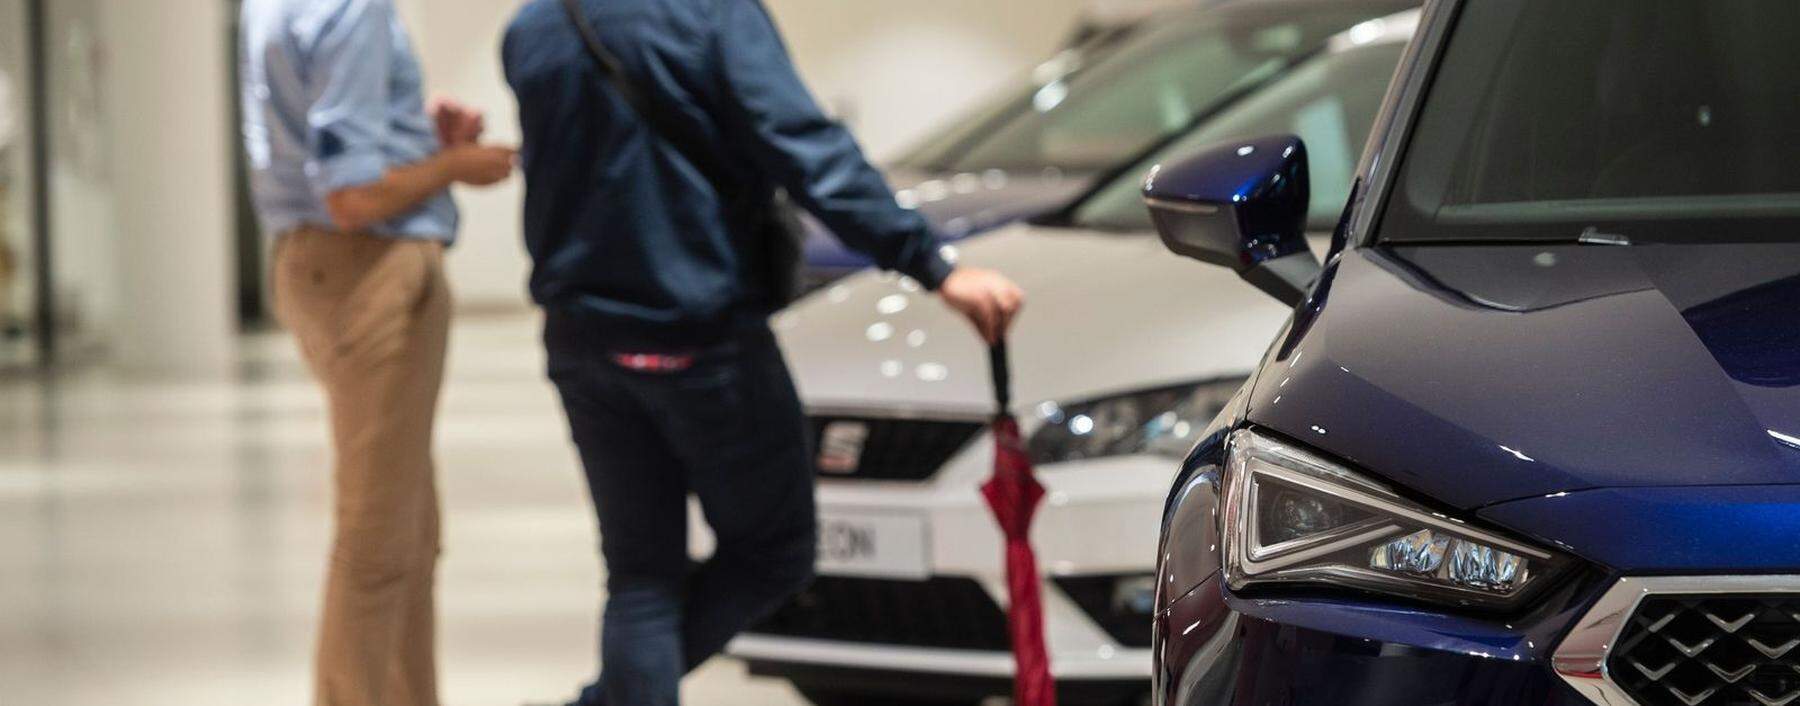 Autokäufer im Schauraum: „Klassische Autobauer senken die Listenpreise ihrer Fahrzeuge so gut wie nie.“